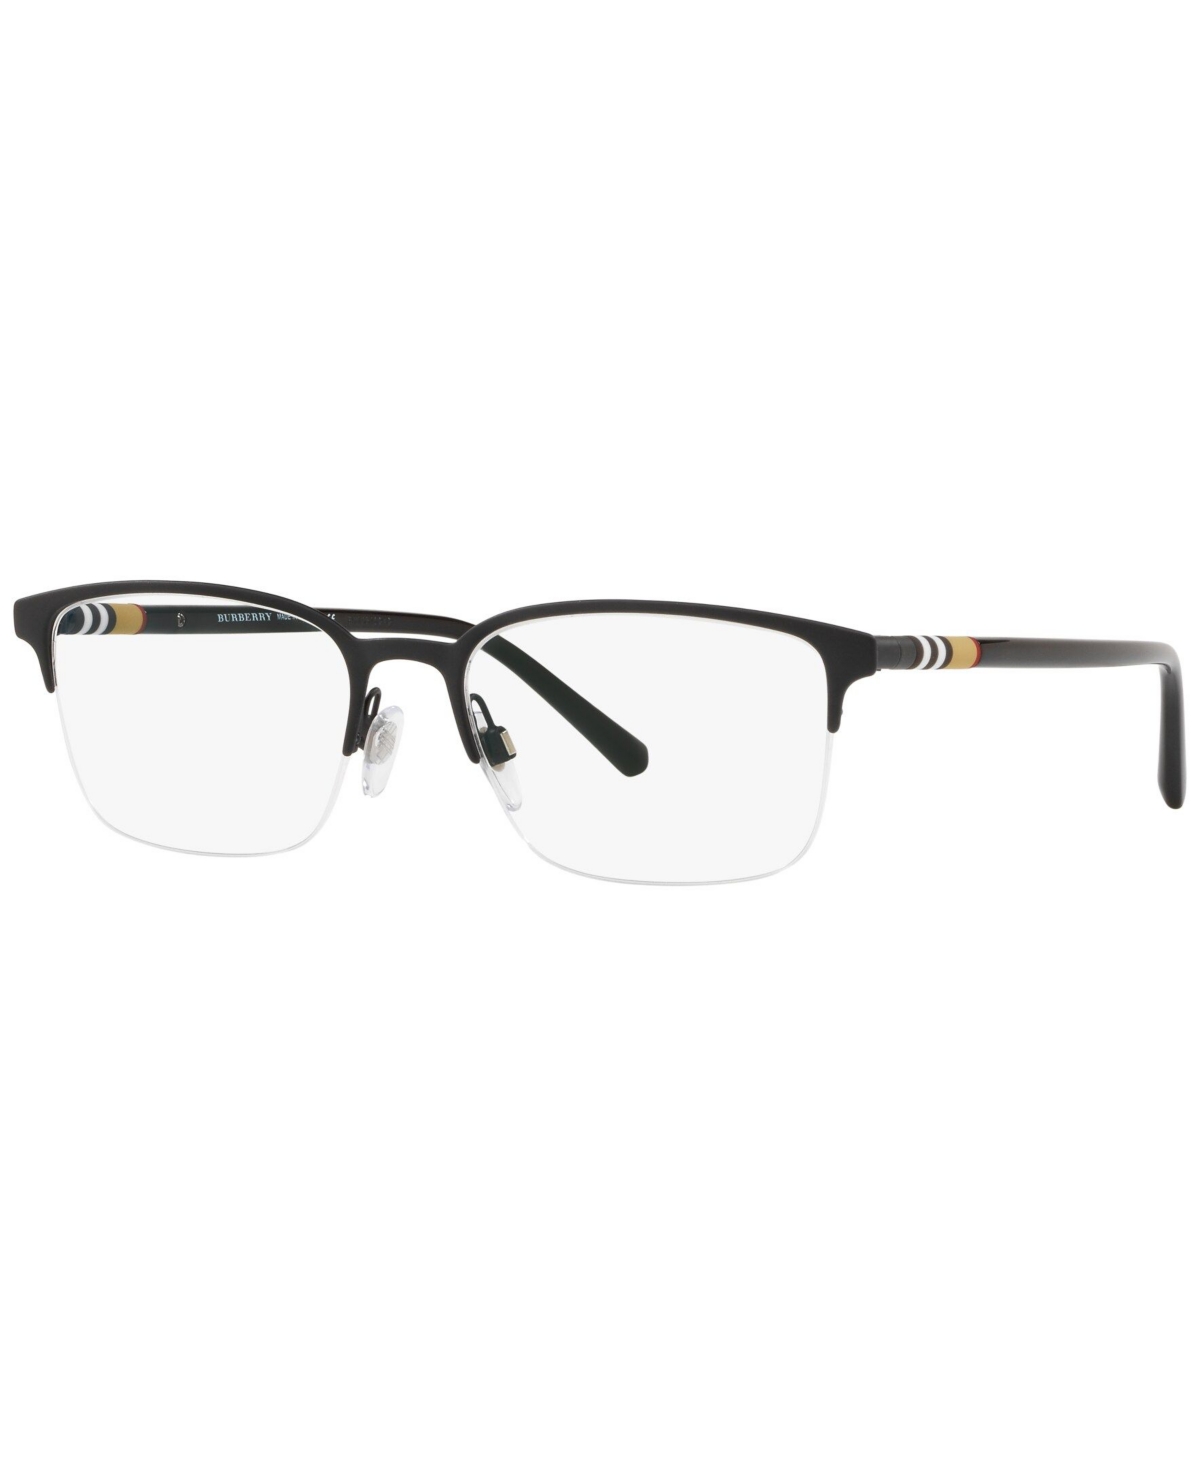 BE1323 Men's Rectangle Eyeglasses - Black